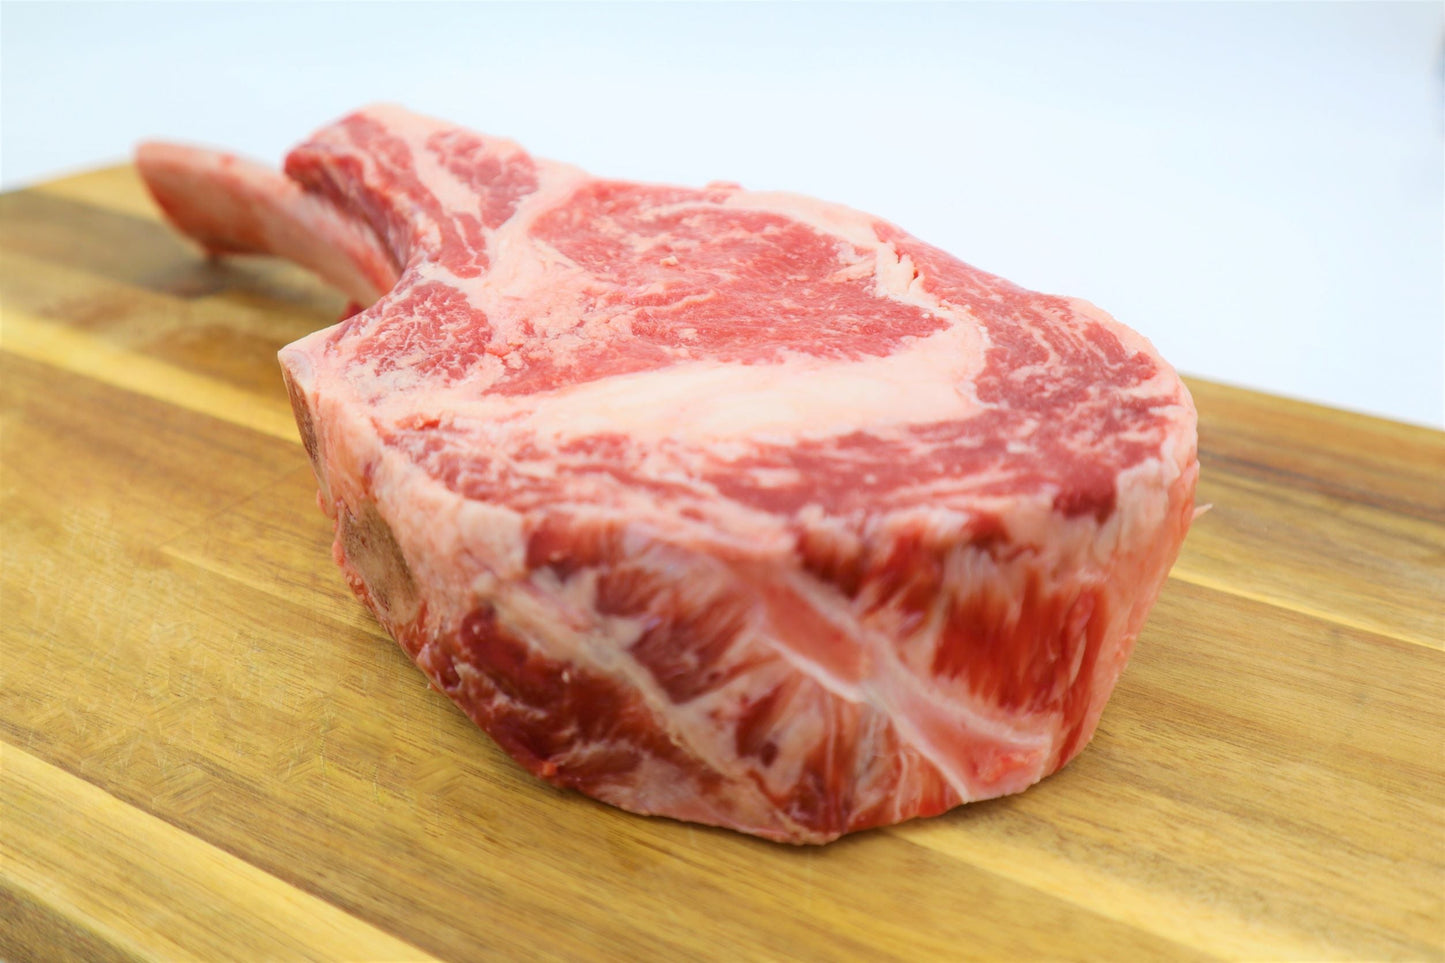 Glatt Kosher Beef Tomahawk Rib Steak (by rubashkins' meat store)